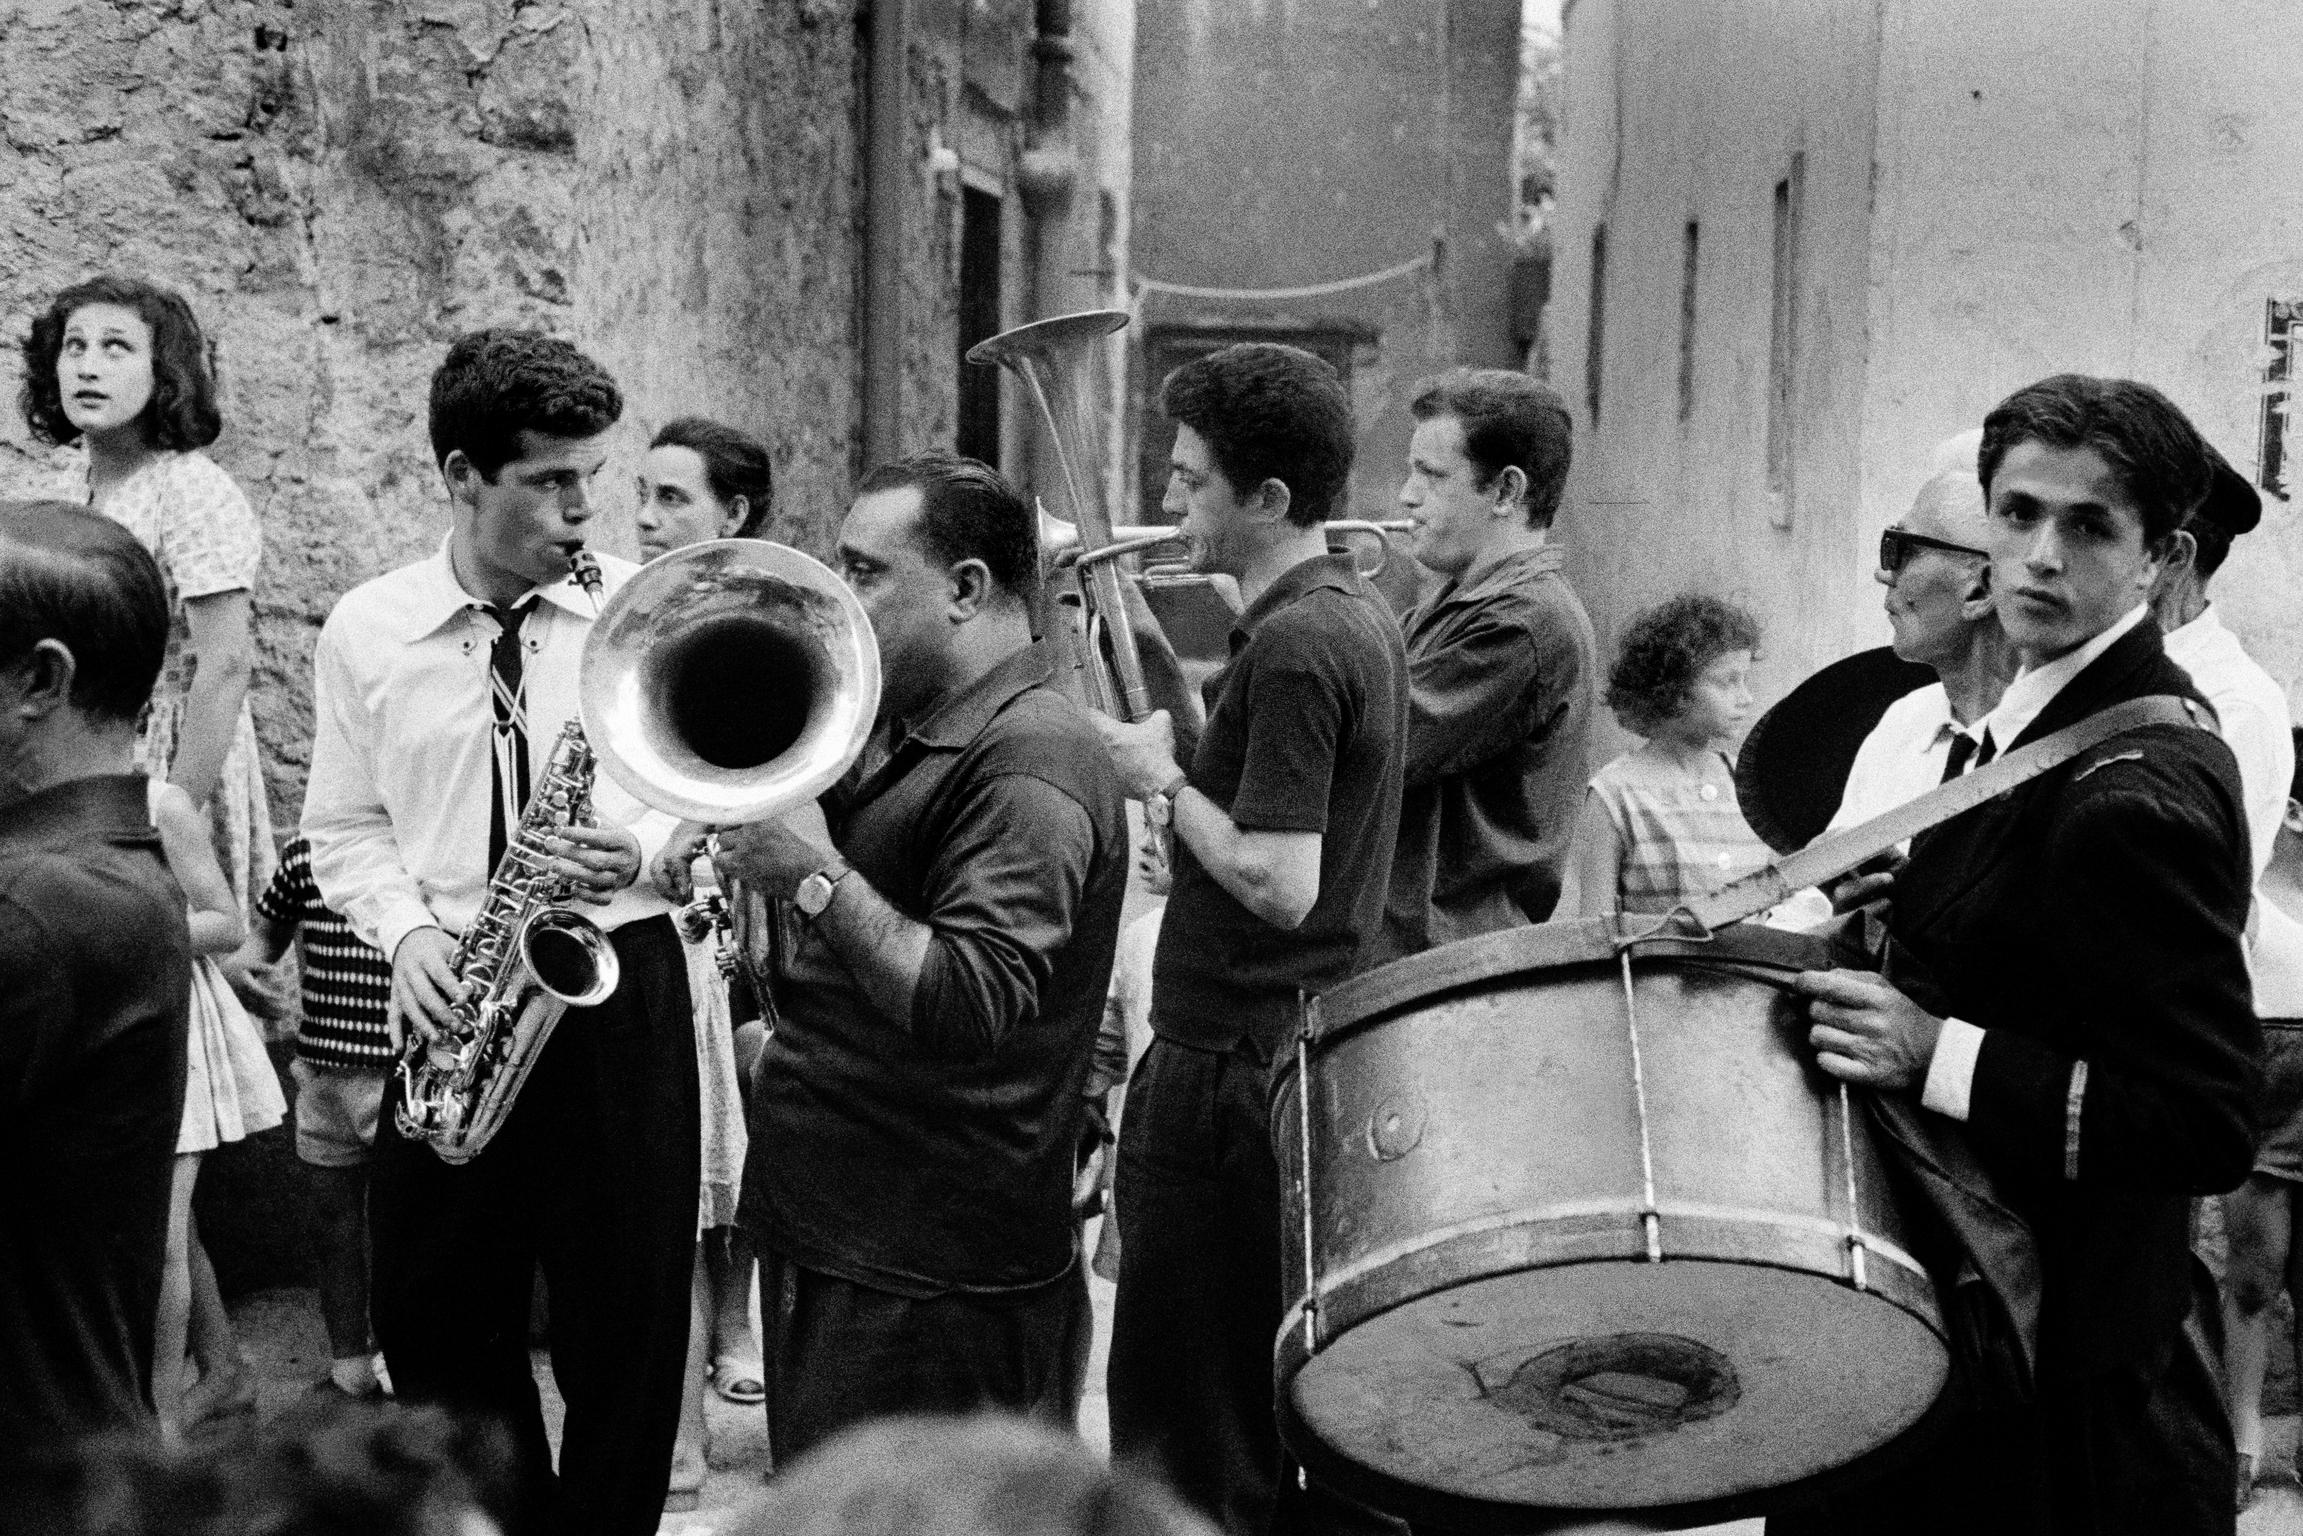 Street band. Amalphi. Italy